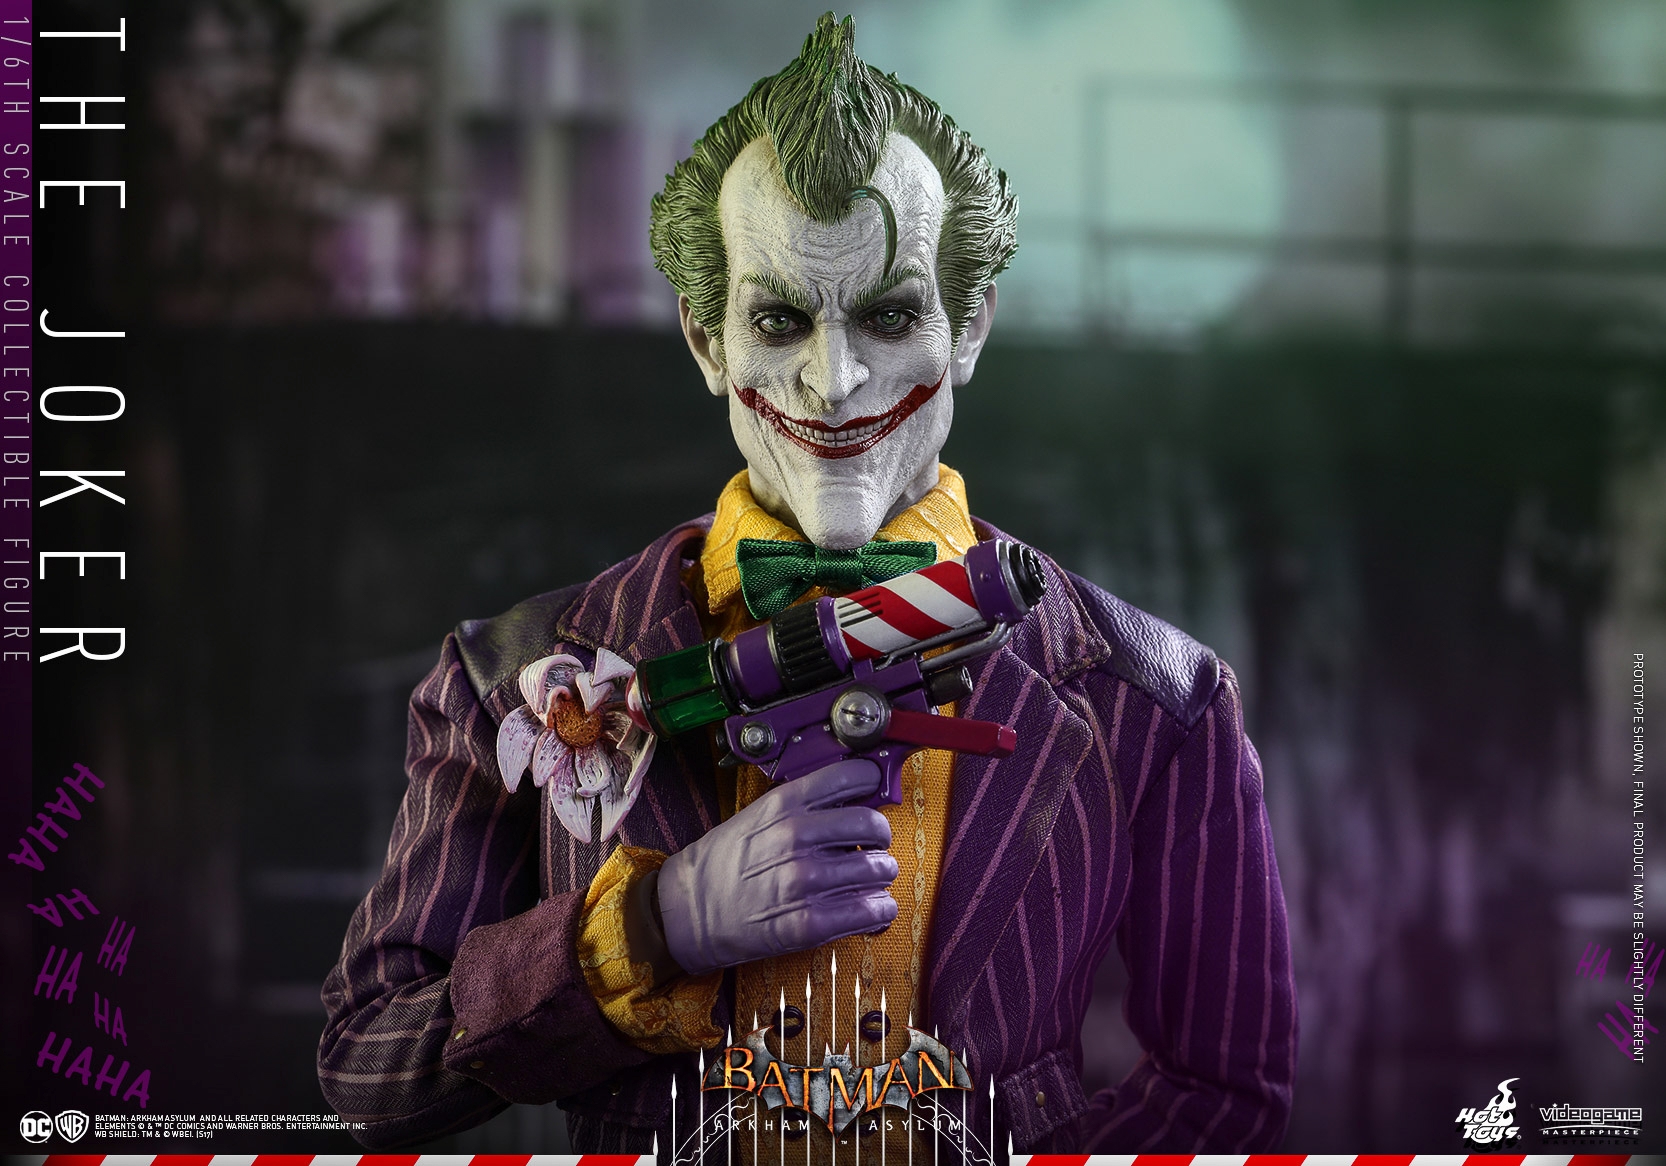 Hot-Toys-Batman-Arkham-Asylum-Joker-Collectible-Figure-018.jpg